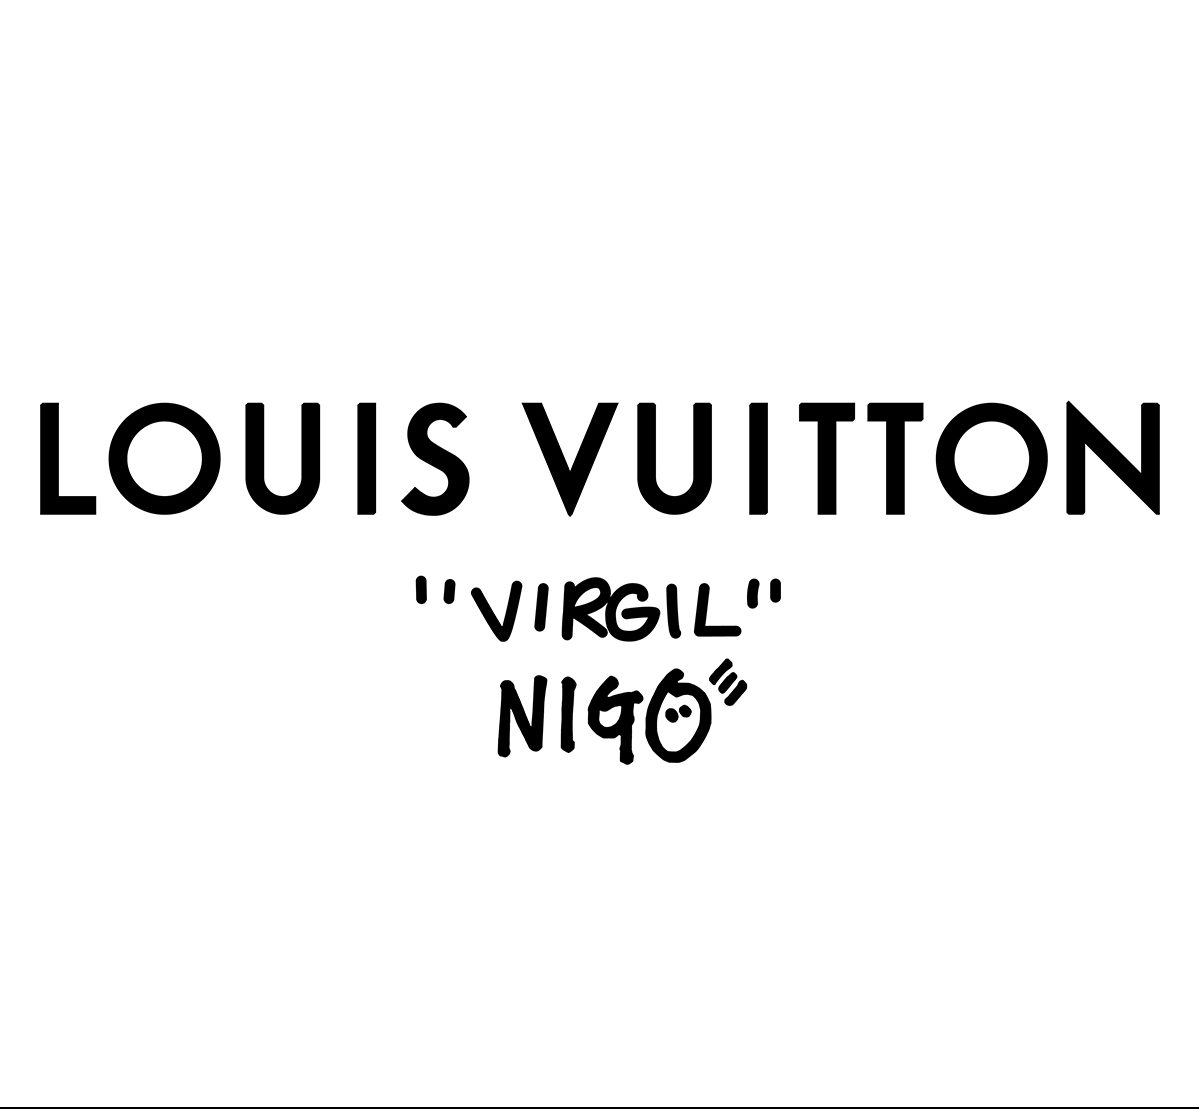 Louis Vuitton x Nigo Lookbook (Louis Vuitton)